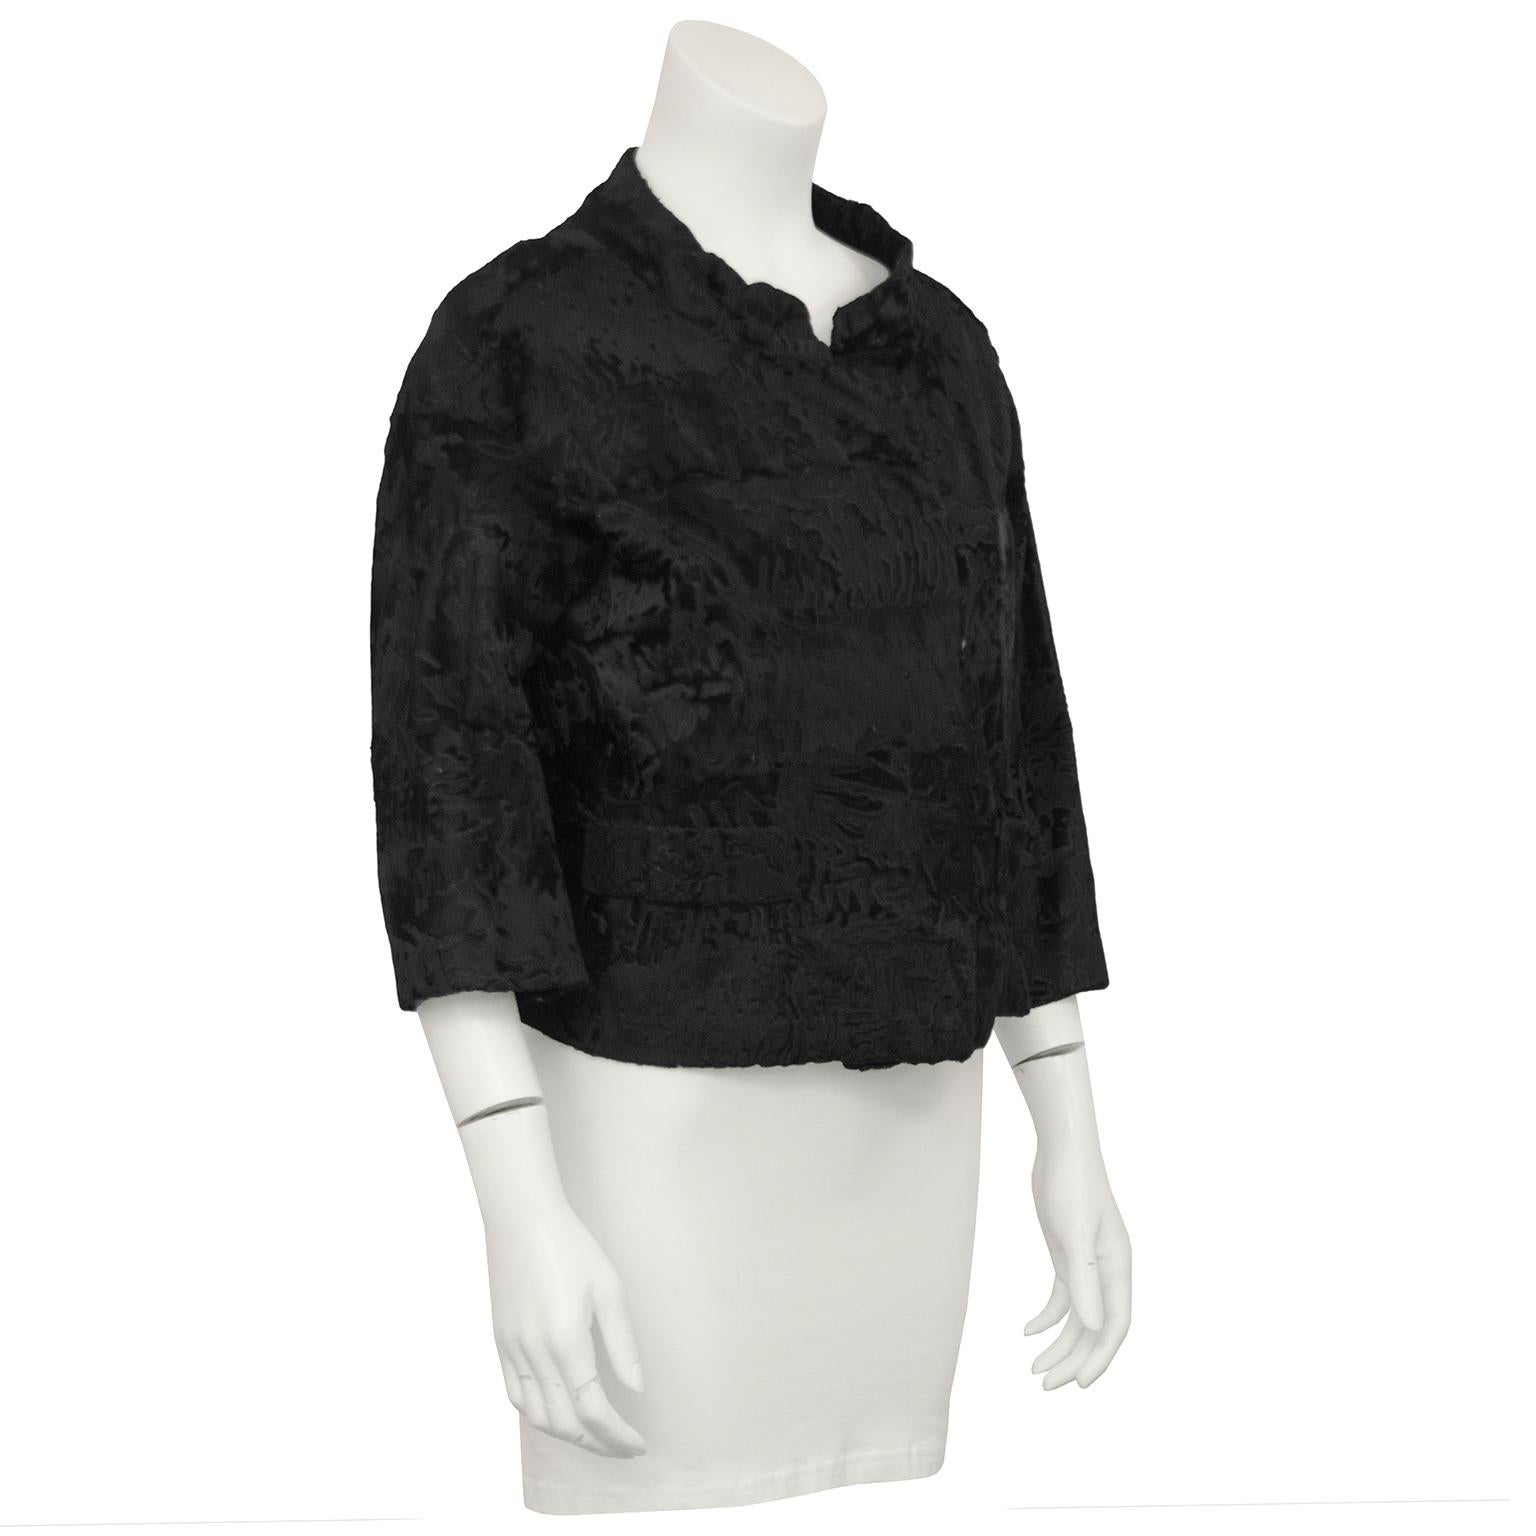 1960er Jahre Christian Dior Original für Holt Renfrew Canada schwarzer Breitschwanz Kurzjacke. Hoher Mandarinkragen mit überlappendem Hakenverschluss und unechten Taschenaufnähern auf der Vorderseite. Ärmel in Armbandlänge.  Mäßige Abnutzung an den